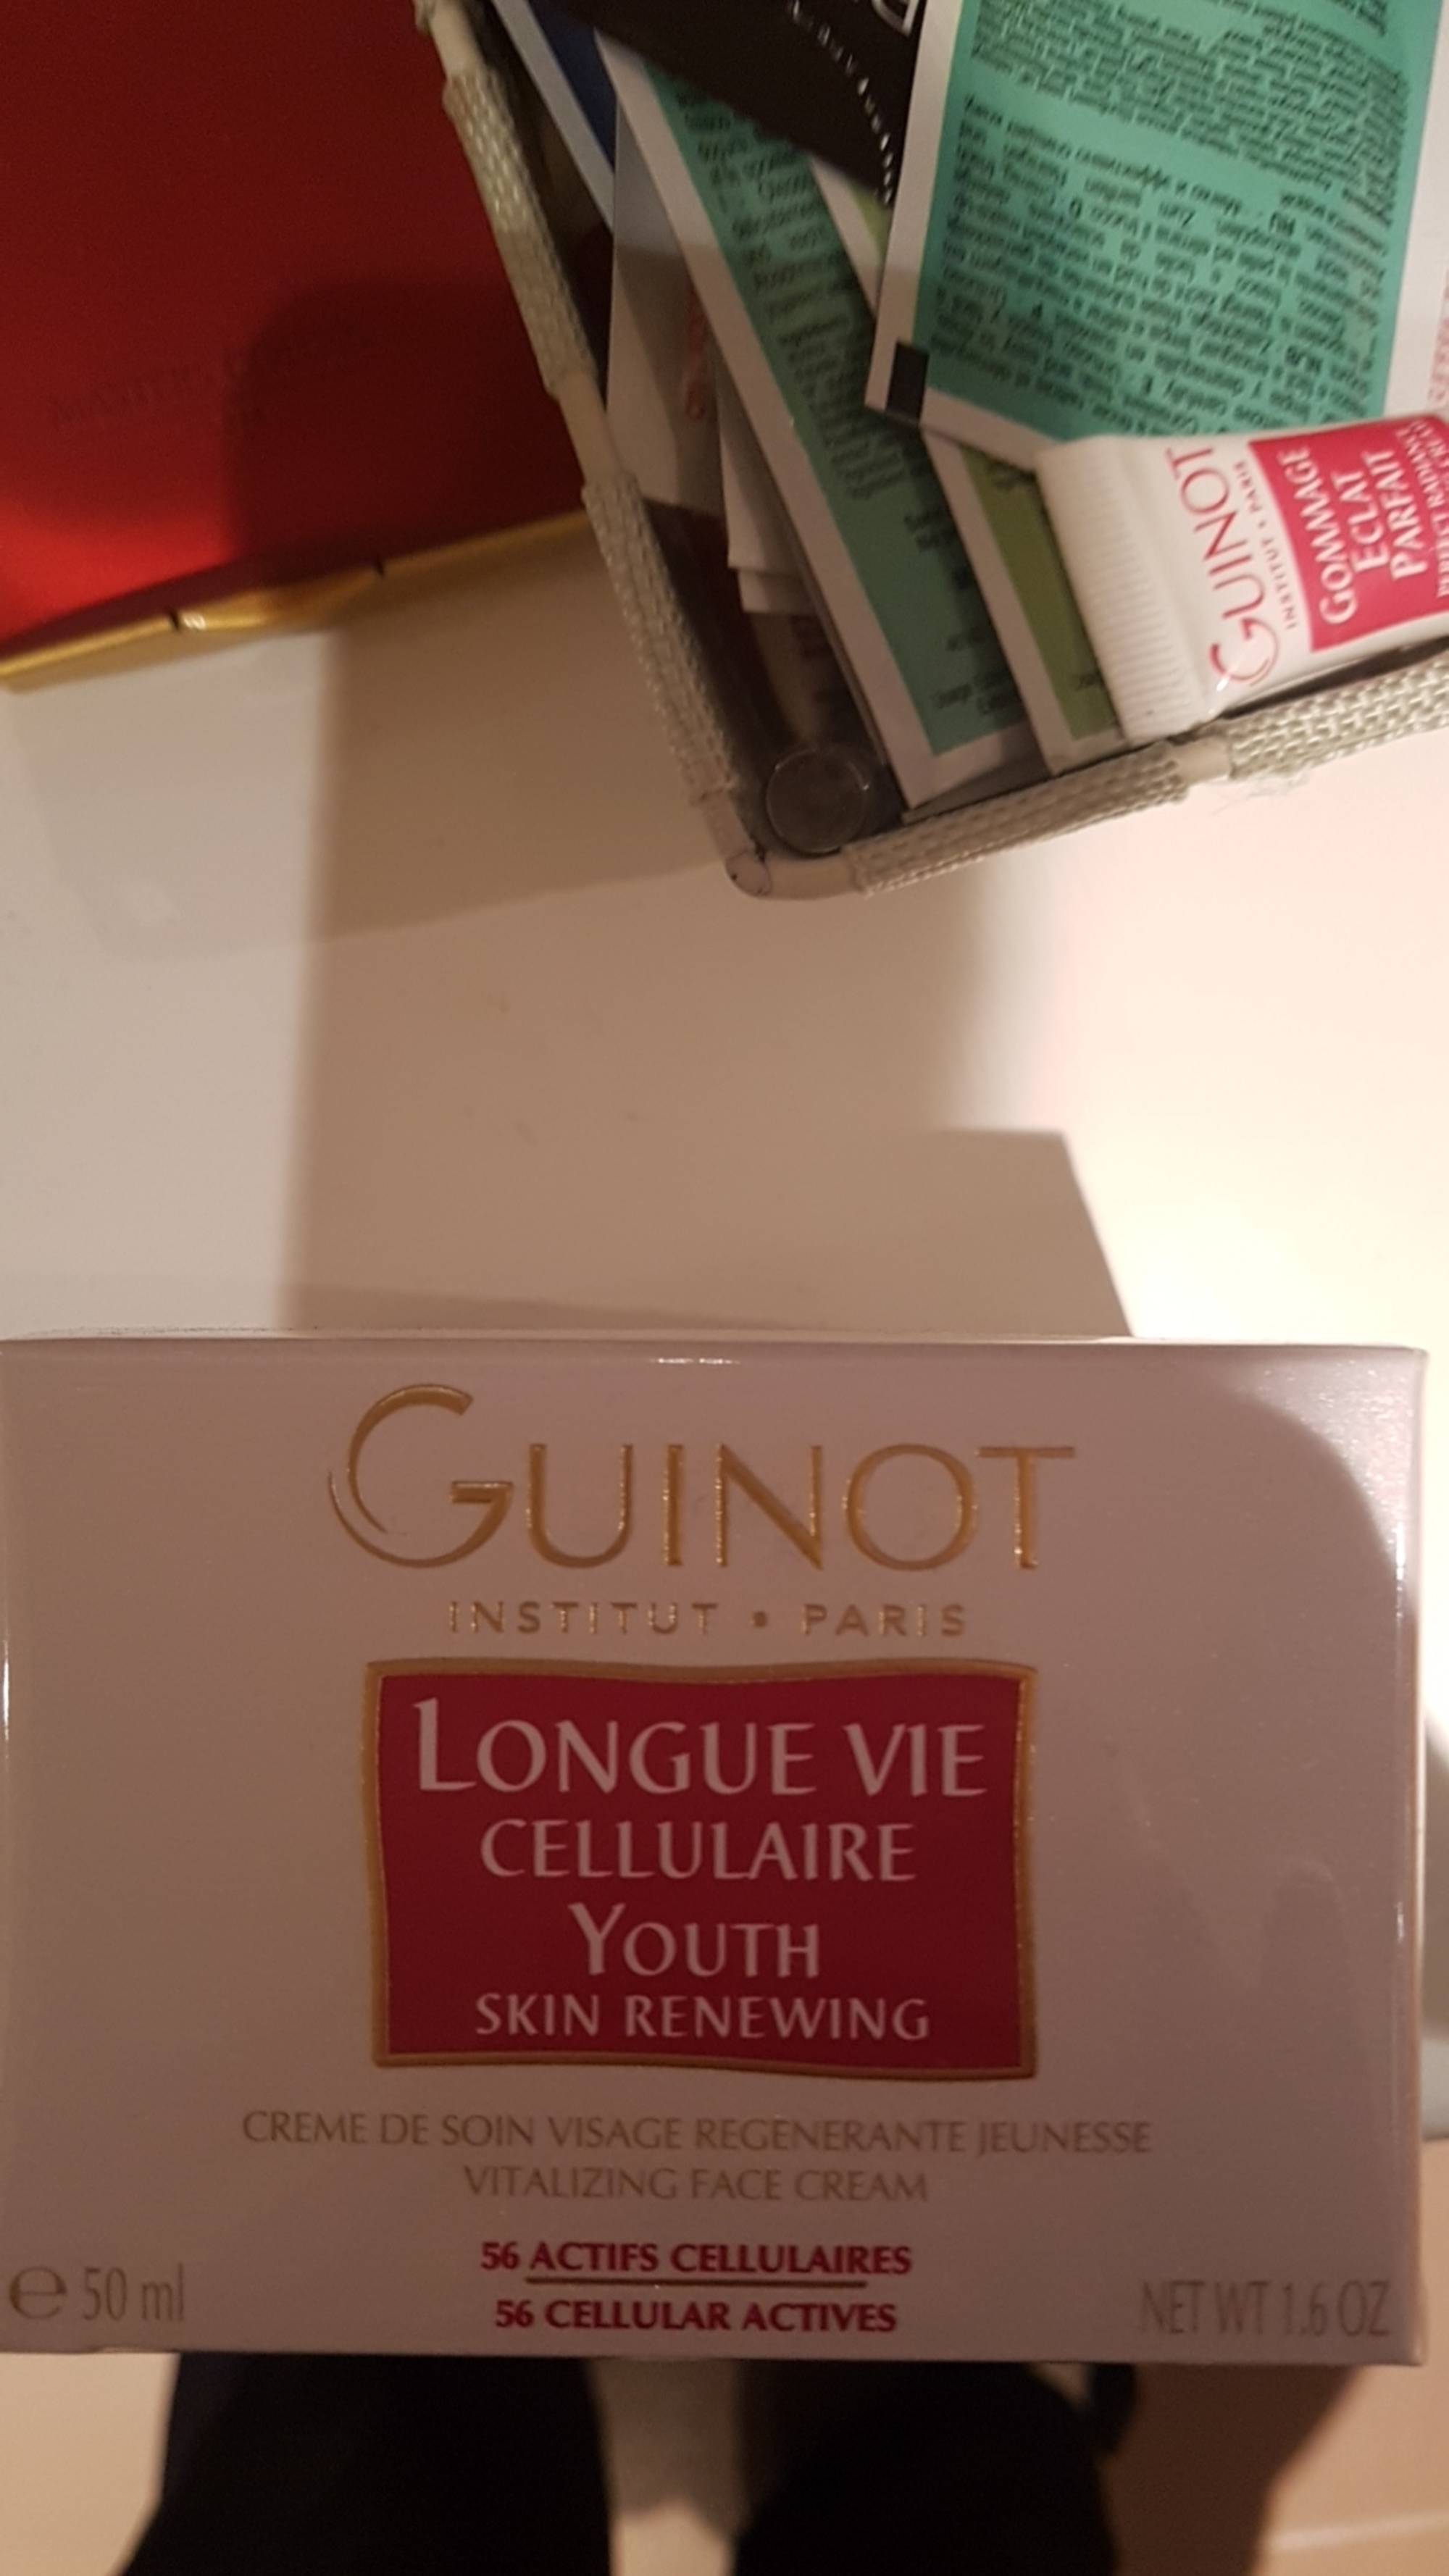 GUINOT - Longue vie cellulaire - Crème de soin visage